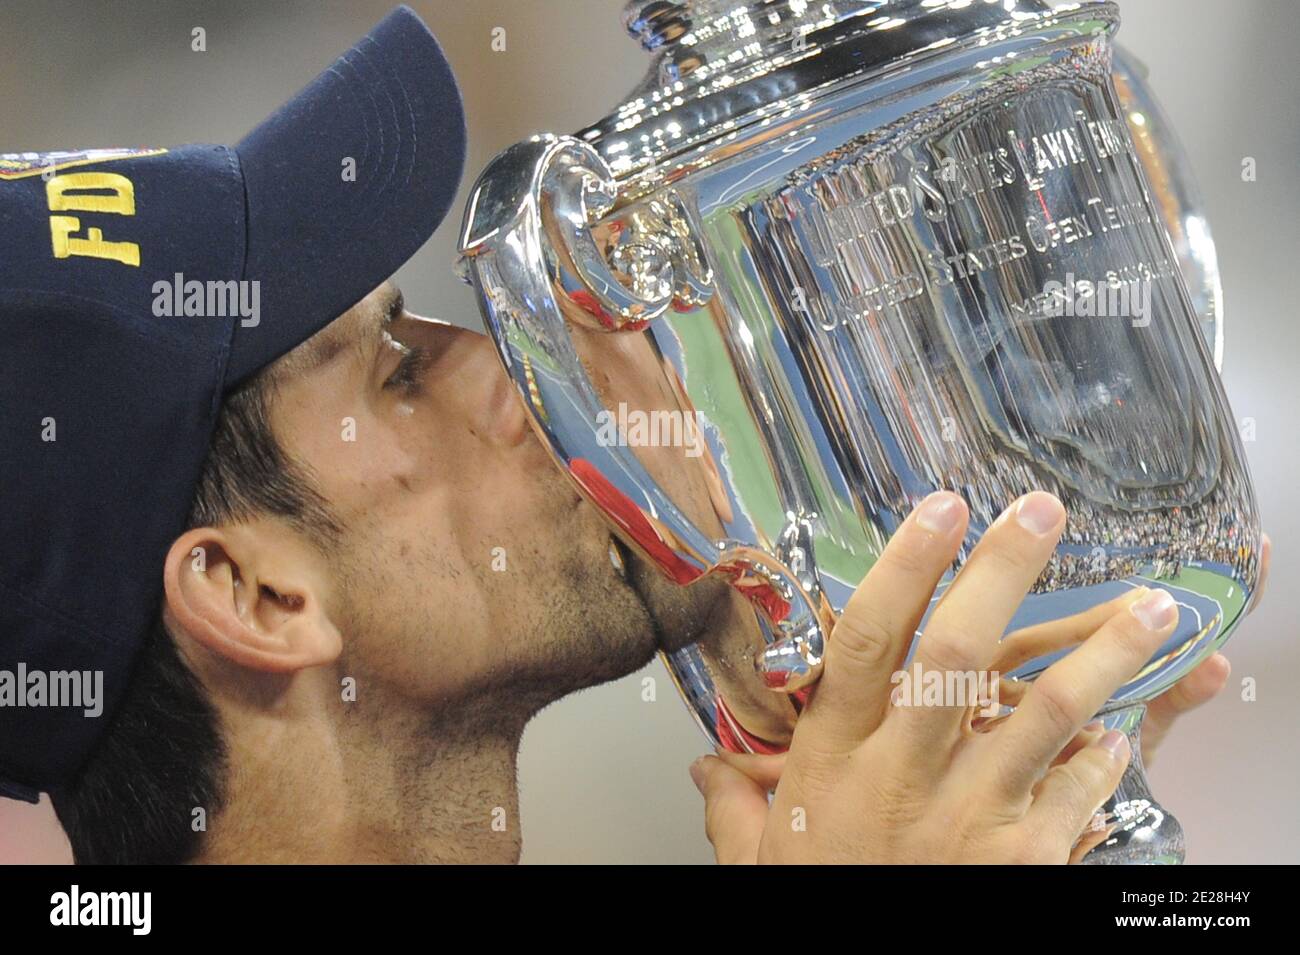 Serbiens Novak Djokovic küsst seine Siegertrophäe nach den Niederlagen 6-2, 6-4, 6-7, 6-1, Spaniens Rafael Nadal in ihrem Männerfinale am 15. Tag der US Open in Flushing Meadows in New York City, NY, USA am 12. September 2011. Foto von Mehdi Taamallah/ABACAPRESS.COM Stockfoto